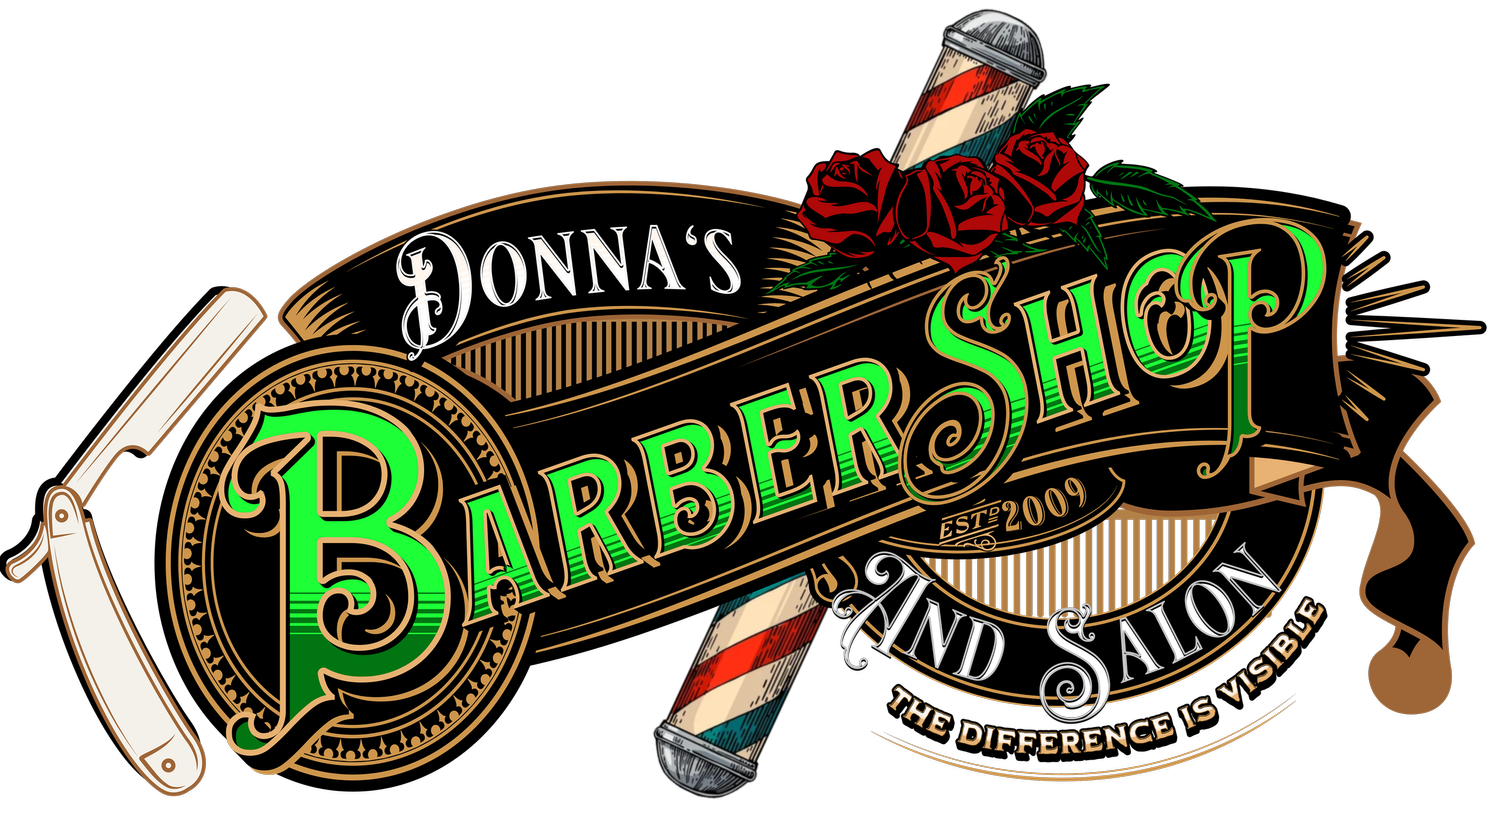 Donna's Salon & Barber Shop